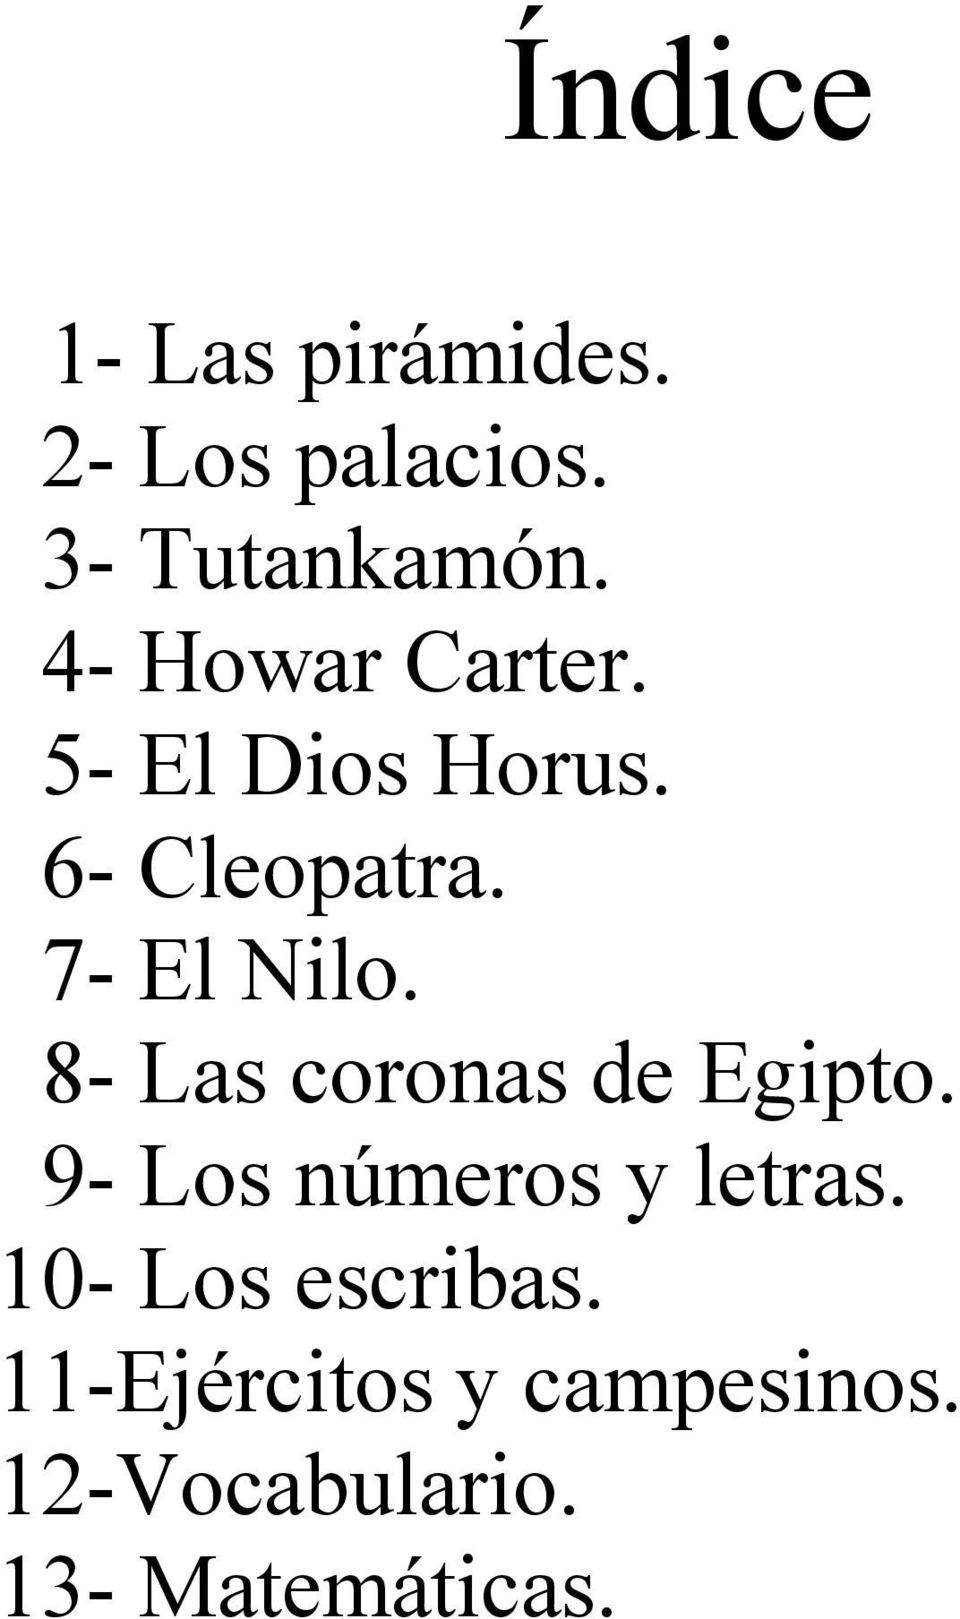 8- Las coronas de Egipto. 9- Los números y letras.